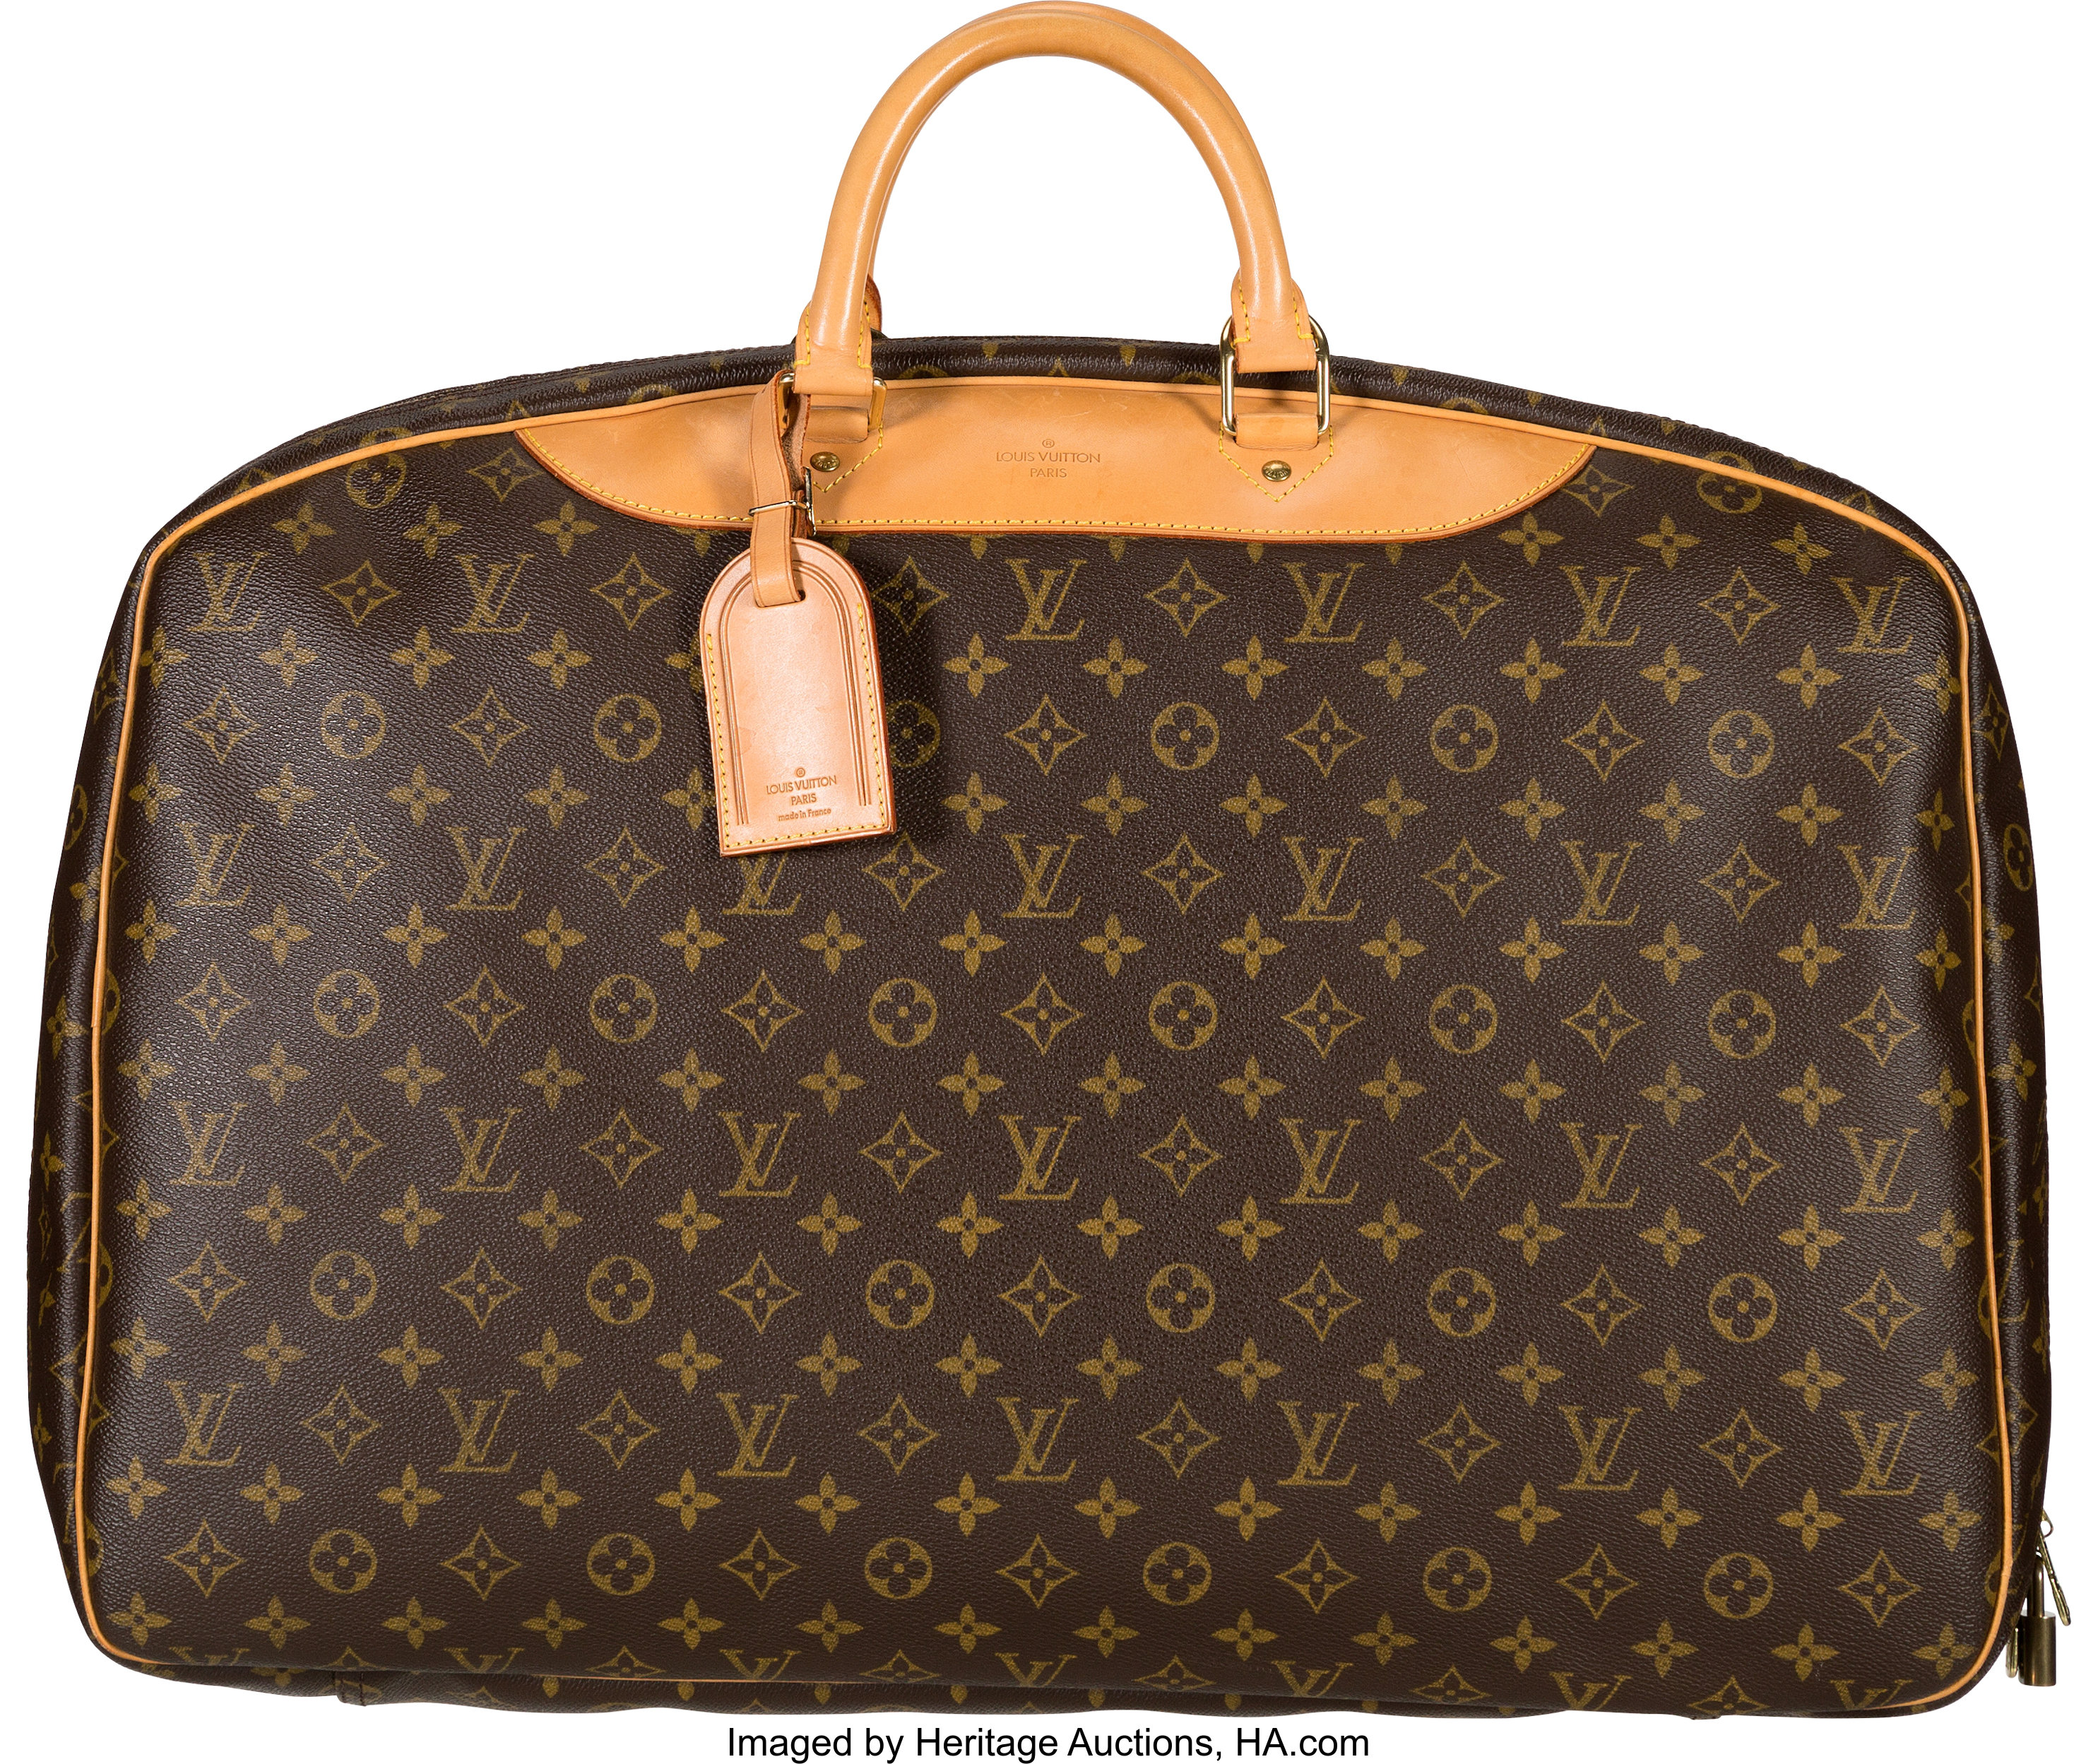 Sold at Auction: Louis Vuitton vintage monogram suitcase